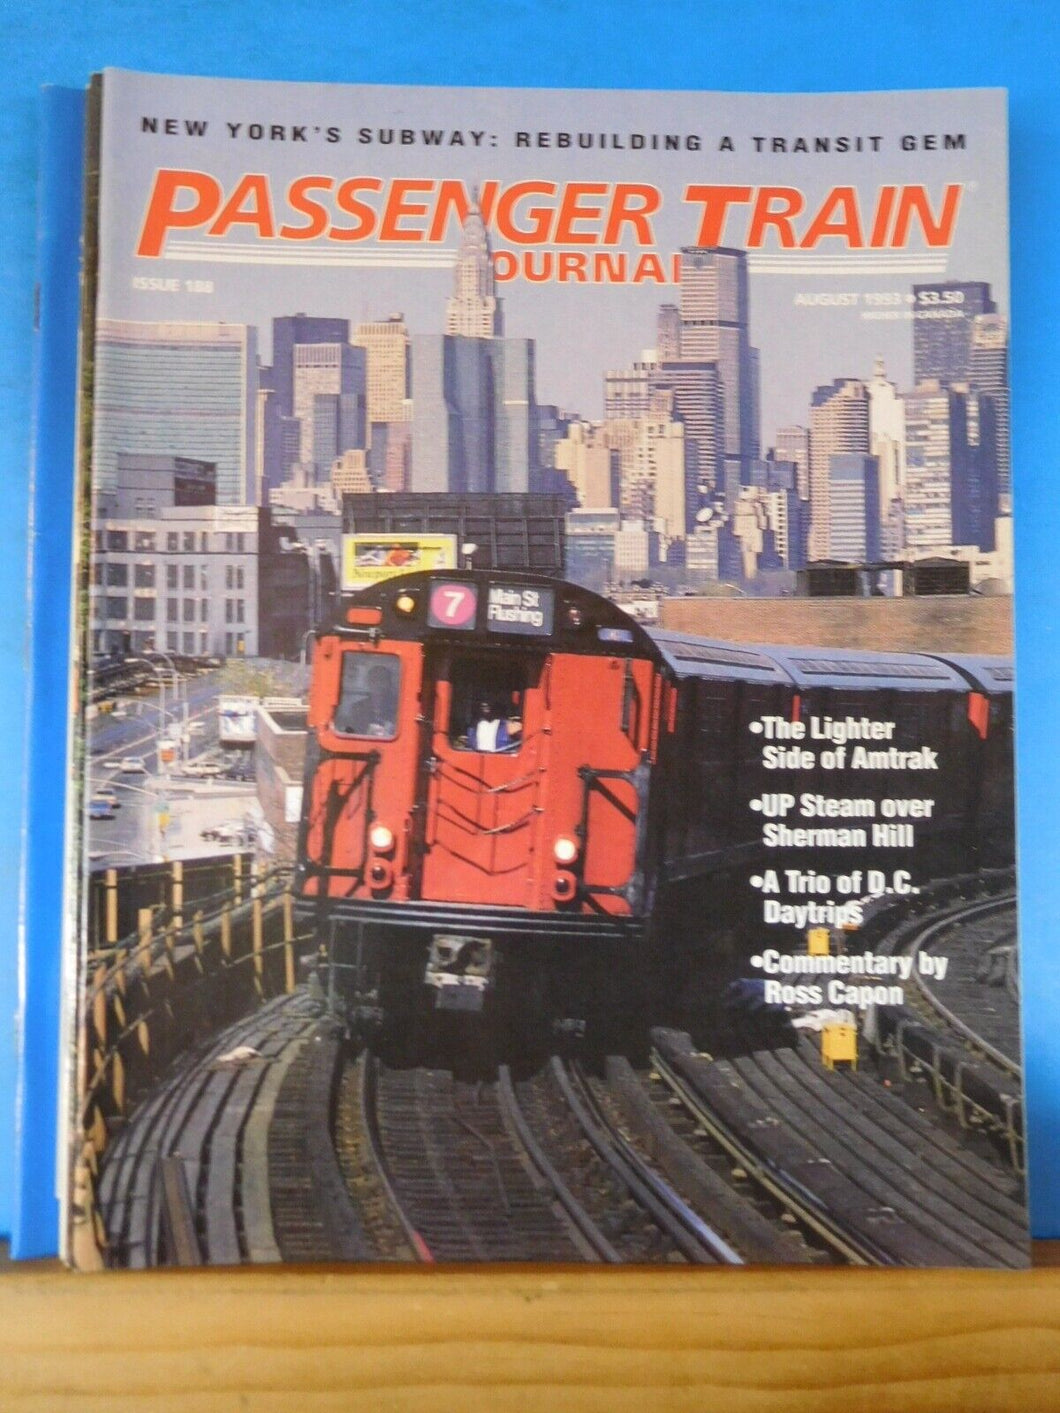 Passenger Train Journal #188 1993 August Lighter side of Amtrak UP Steam SHerman